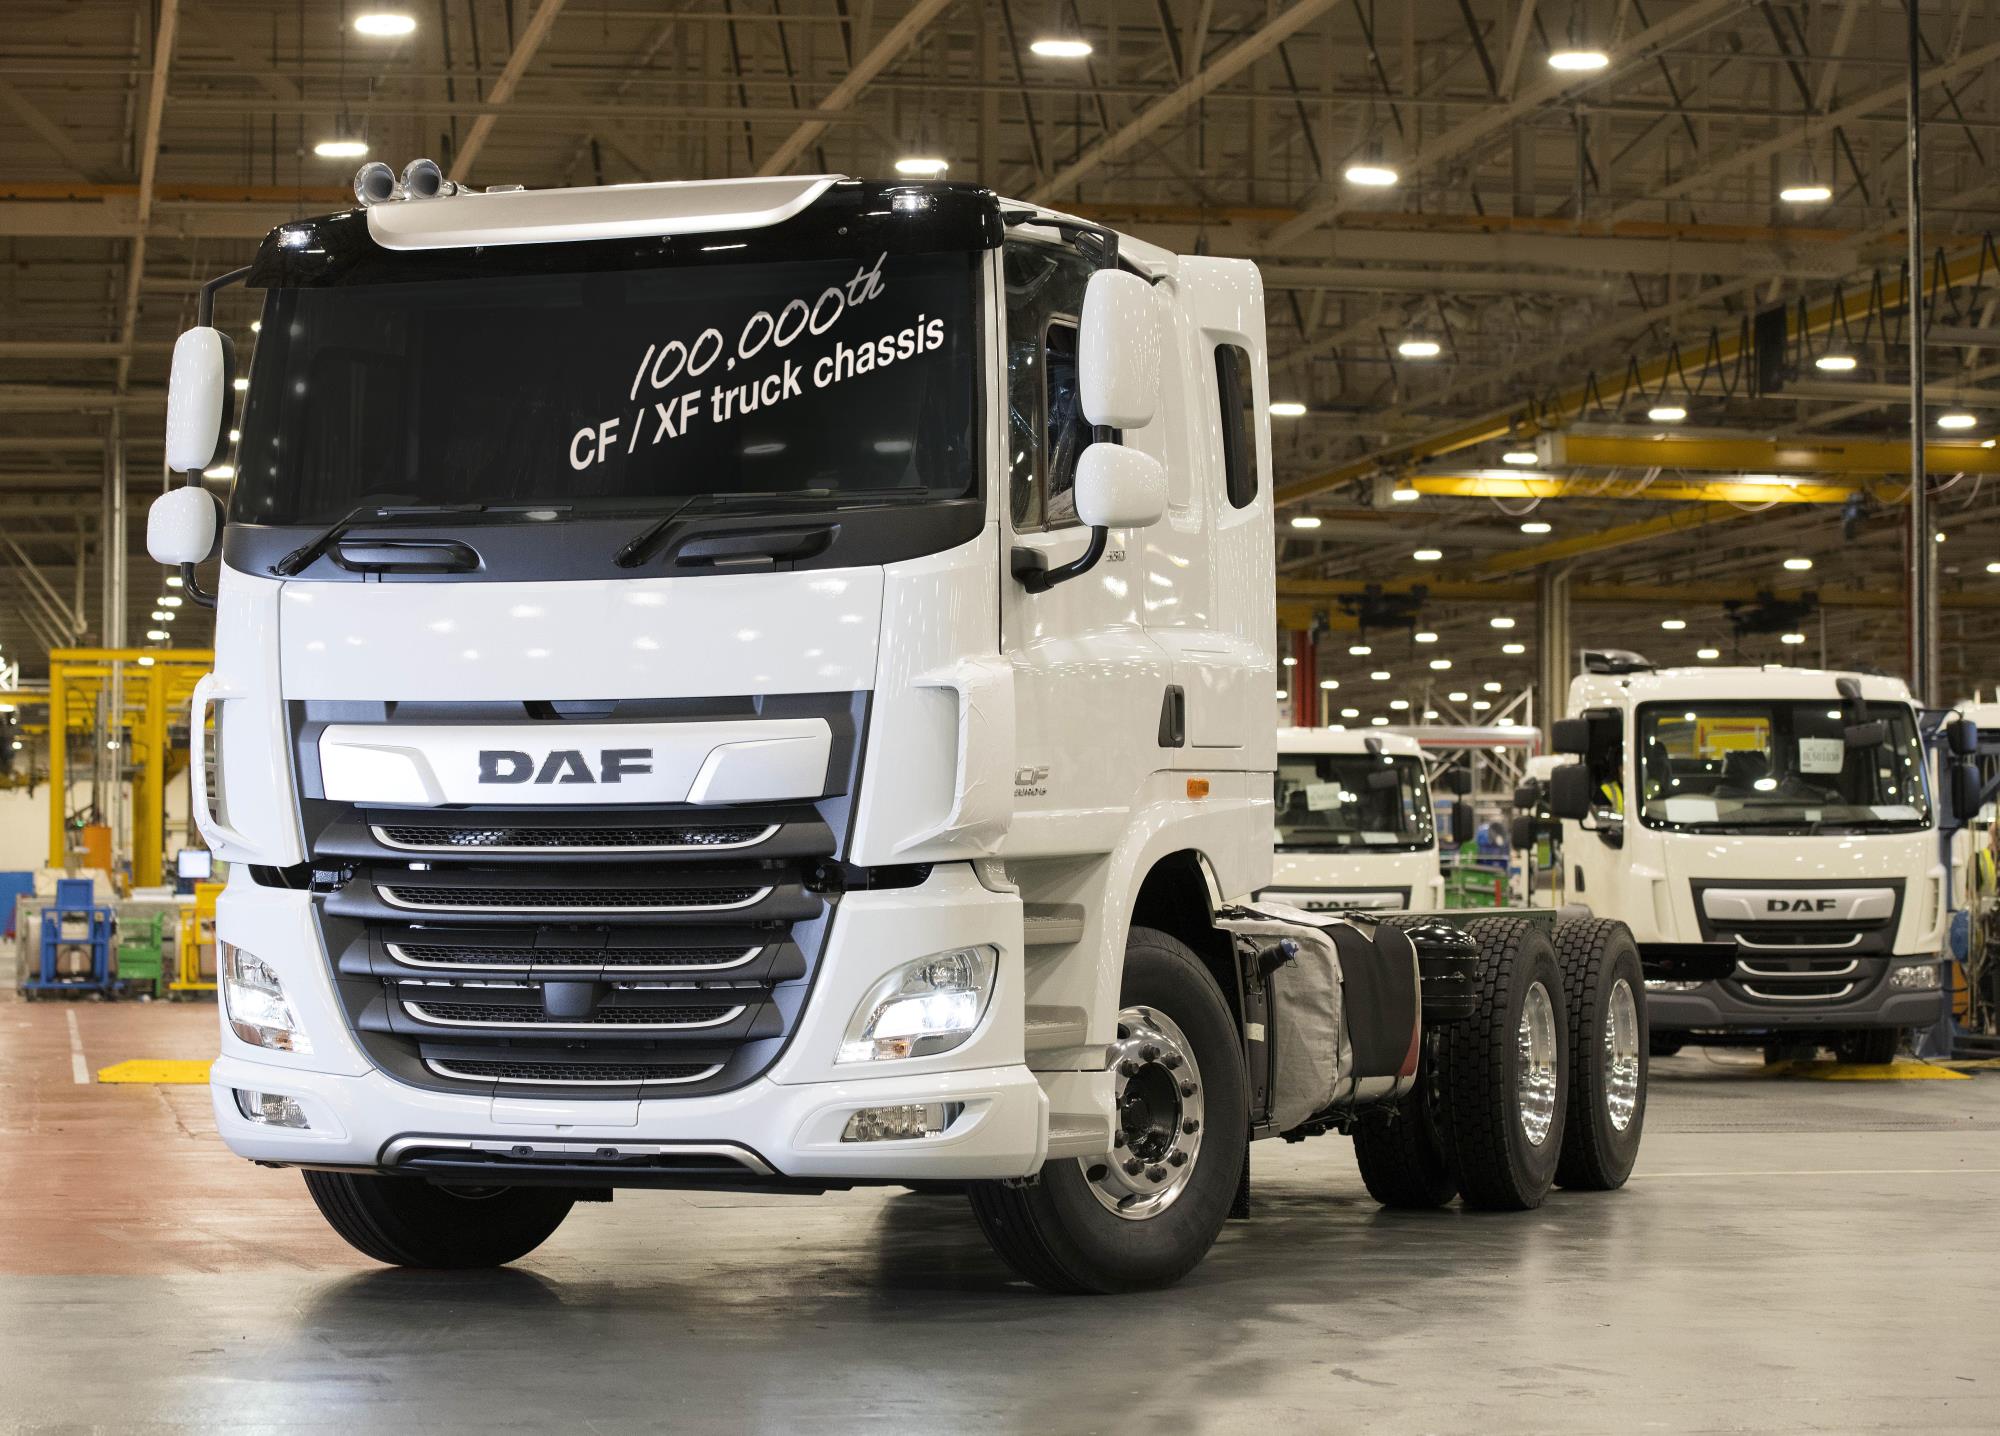 16-17-100000-th-DAF-CF-XF-truck